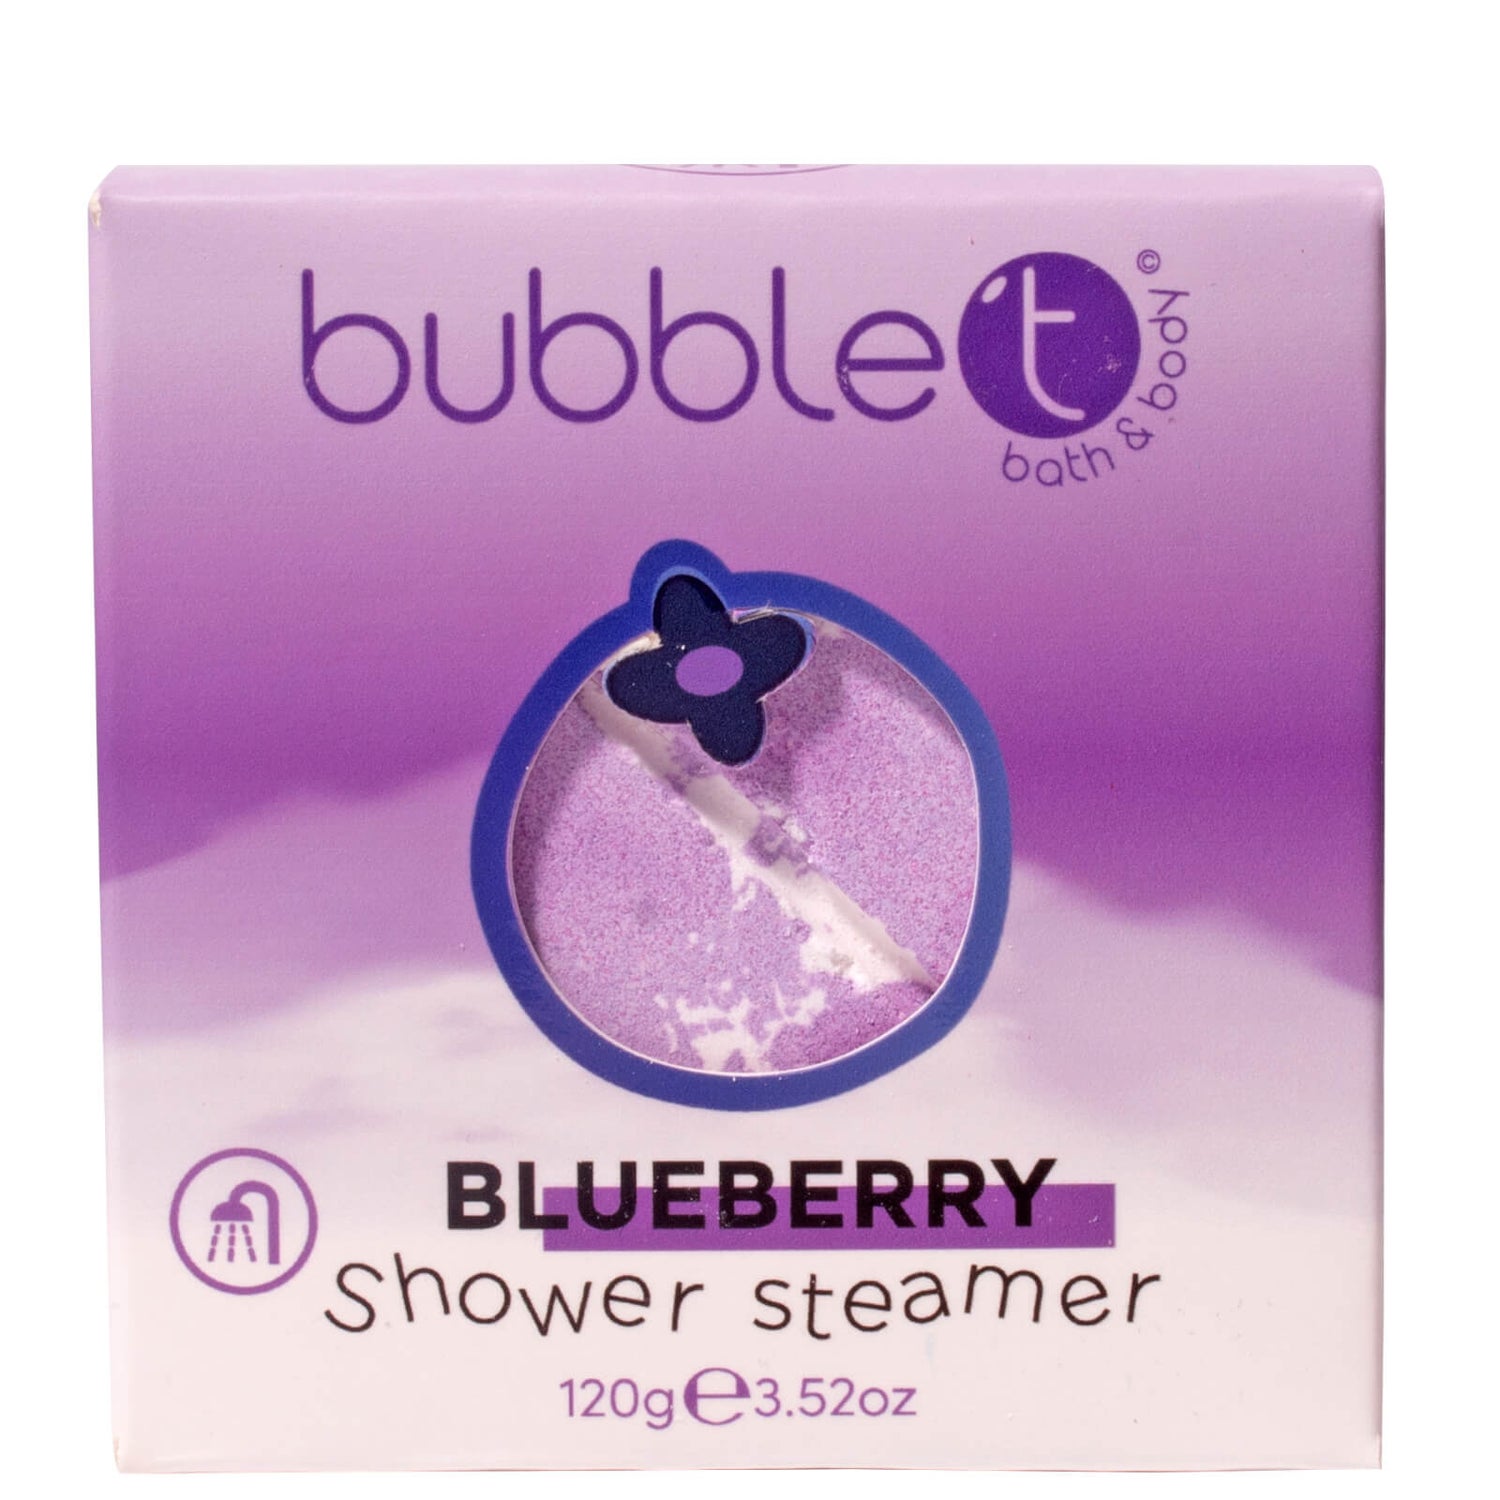 Ароматическое средство для душа Bubble T Shower Steamer, аромат Blueberry